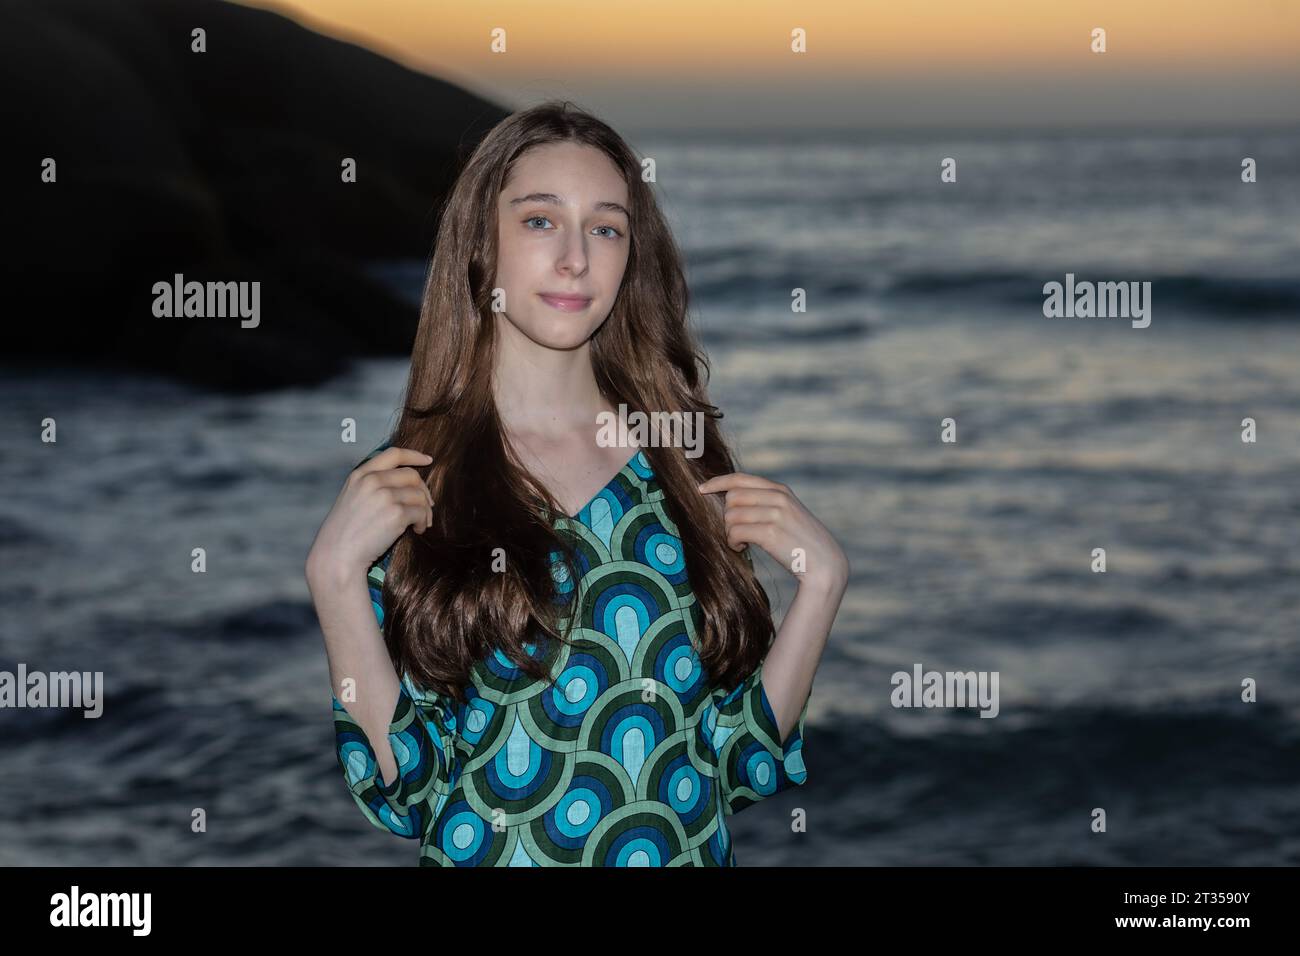 Eine 20-jährige Kaukasierin steht bei Sonnenuntergang am Strand und trägt ein lebendiges und farbenfrohes Hemdkleid, während die Sonne ein warmes Licht über den Strand wirft Stockfoto